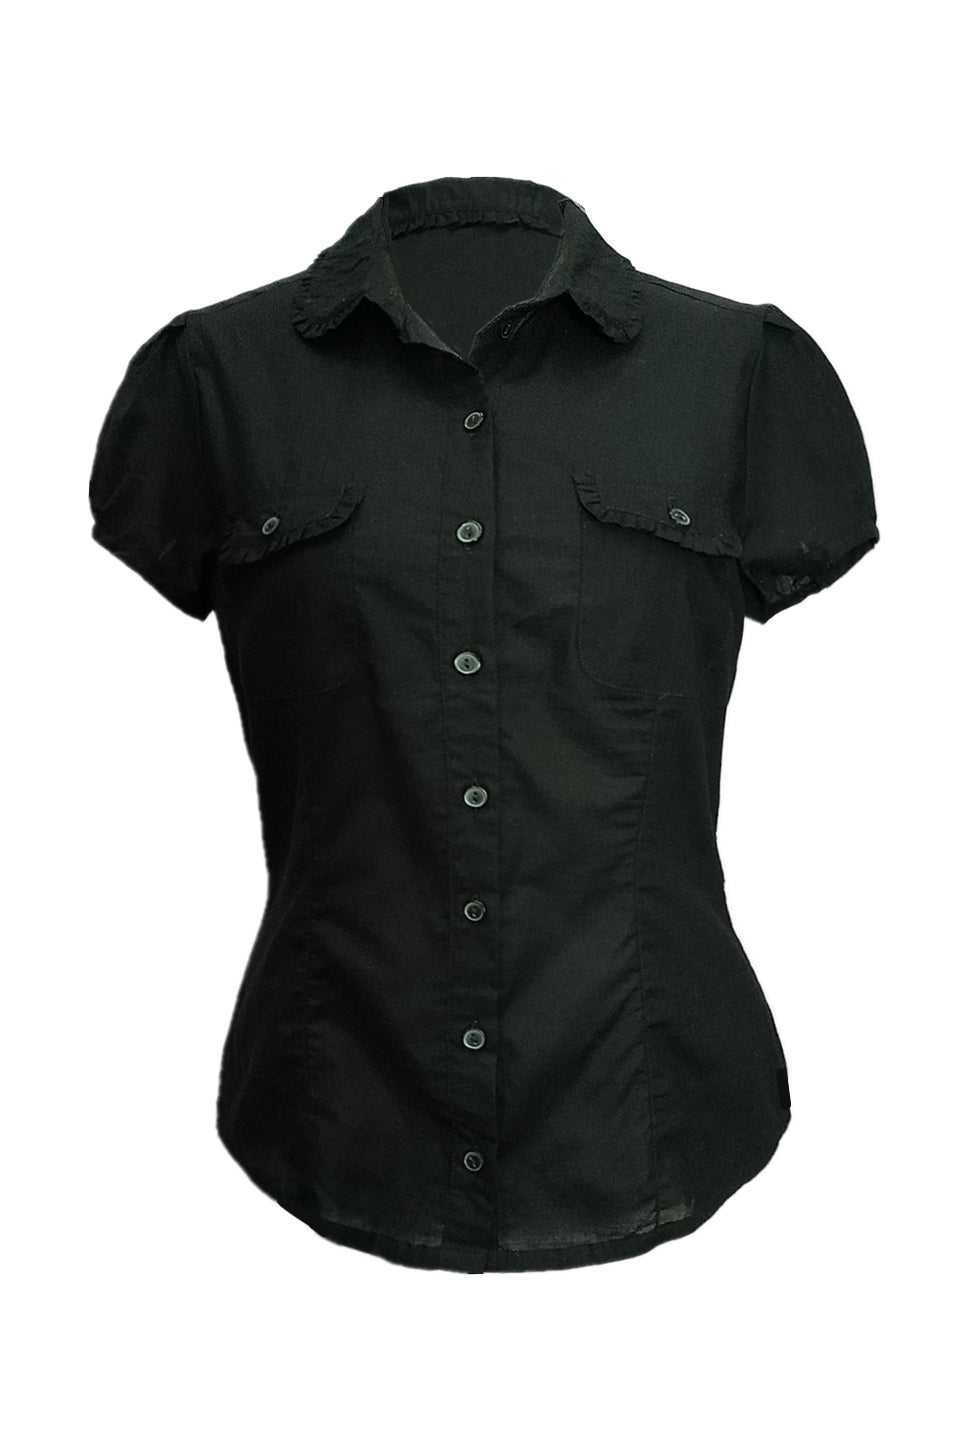 Ruth pocket short sleeves shirt in black